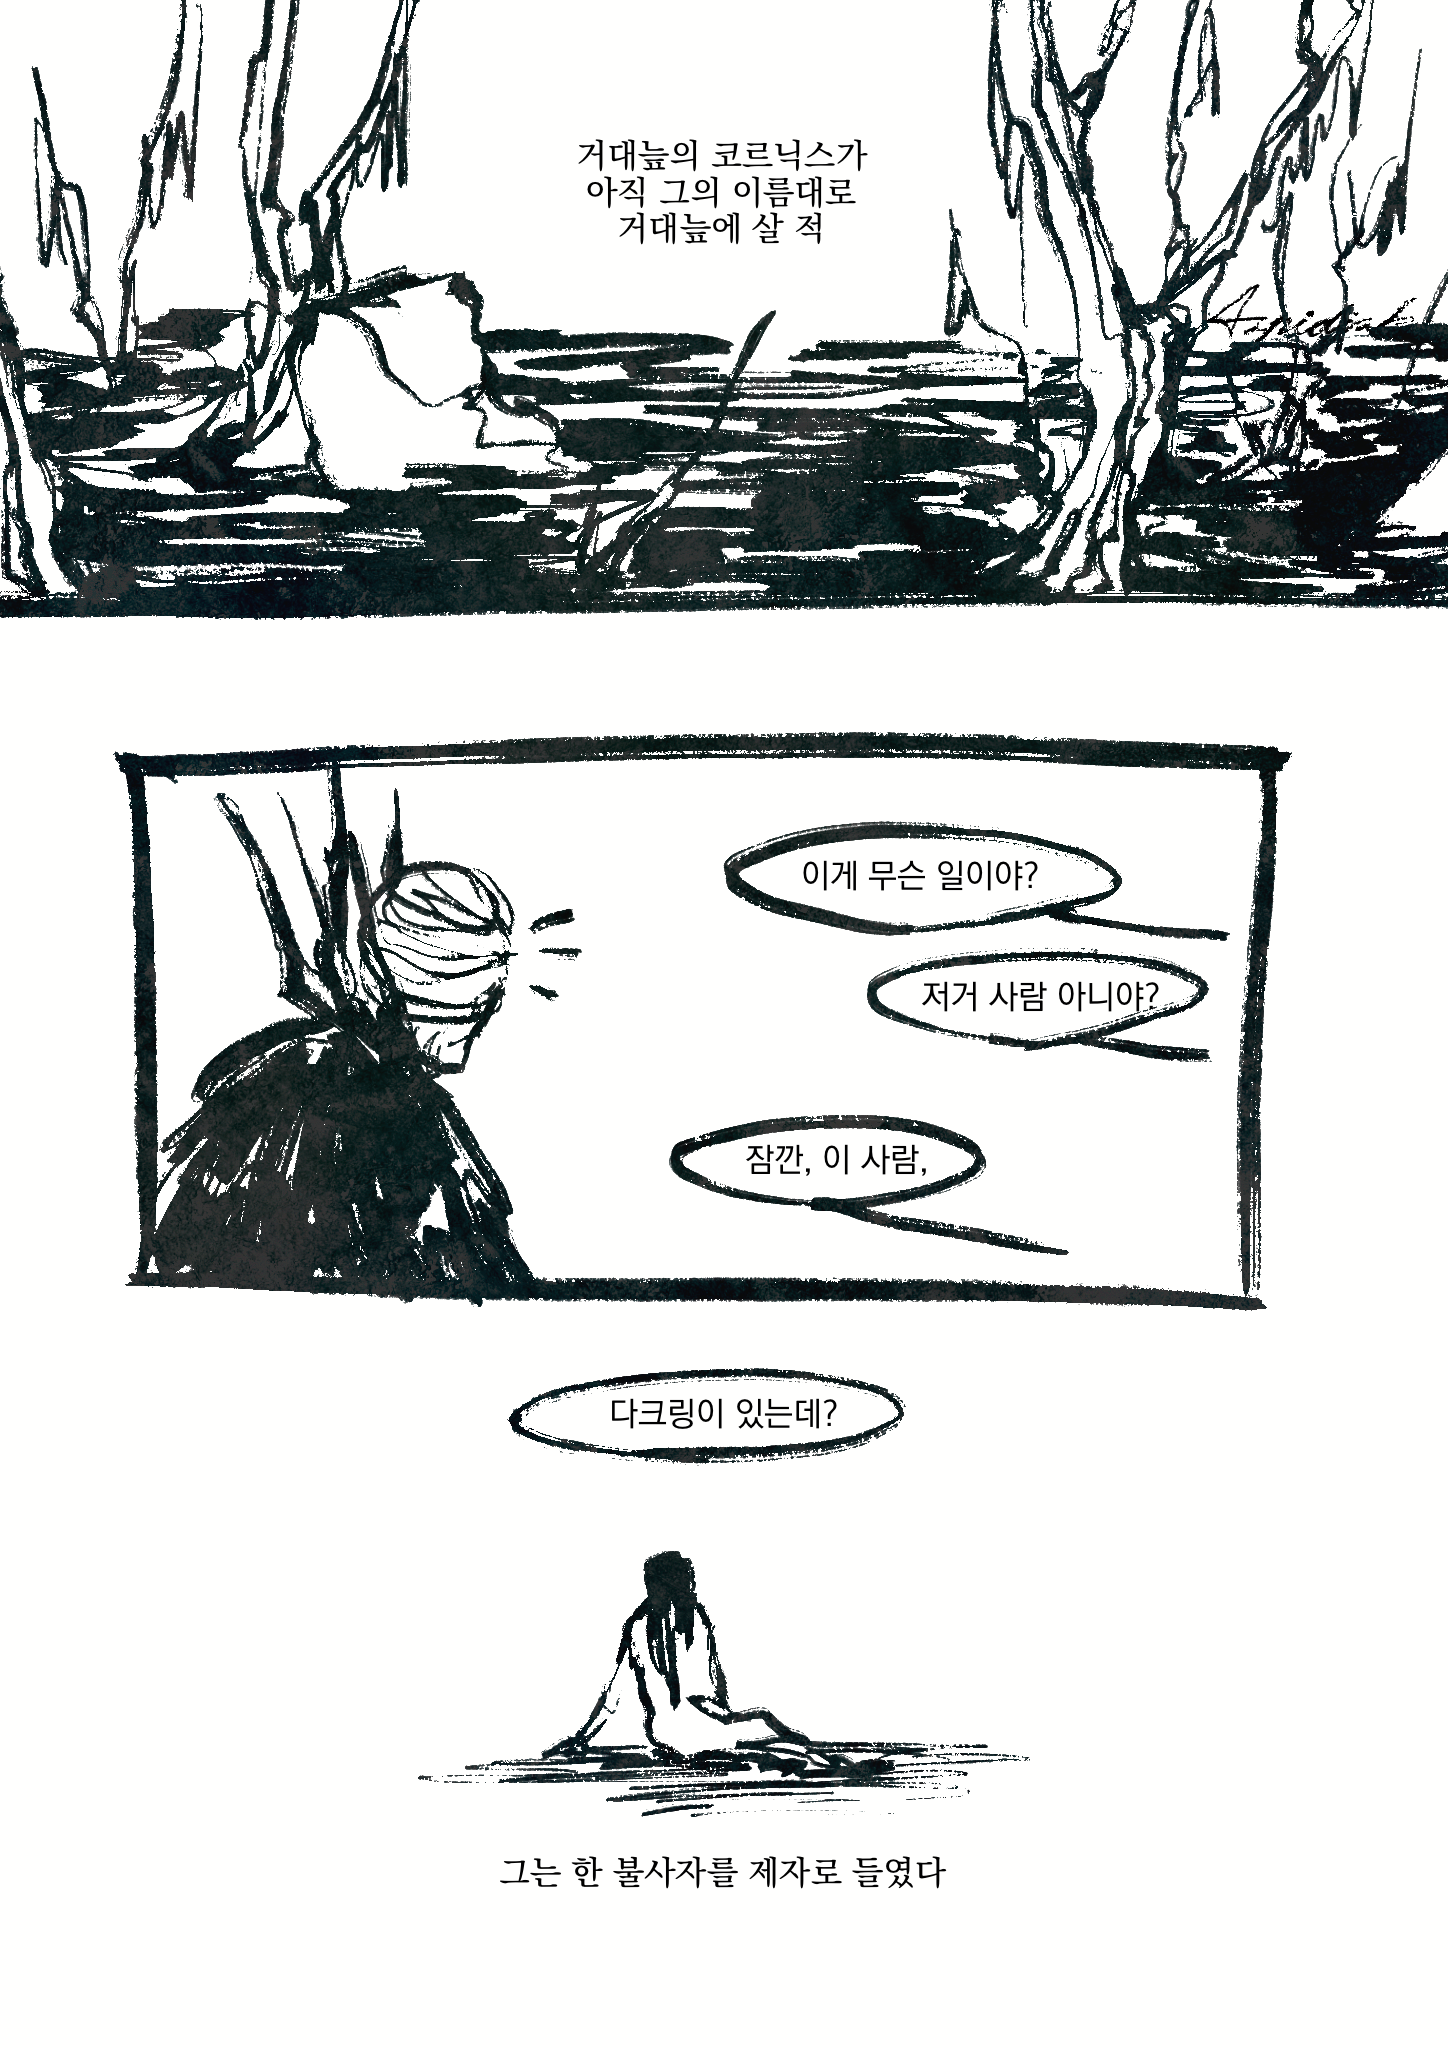 만화 1페이지. 거대늪의 전경. 코르닉스가 웅성거림에 고개를 들었다가 저만치에 주저앉아 있는 쿠쿨루스를 본다.